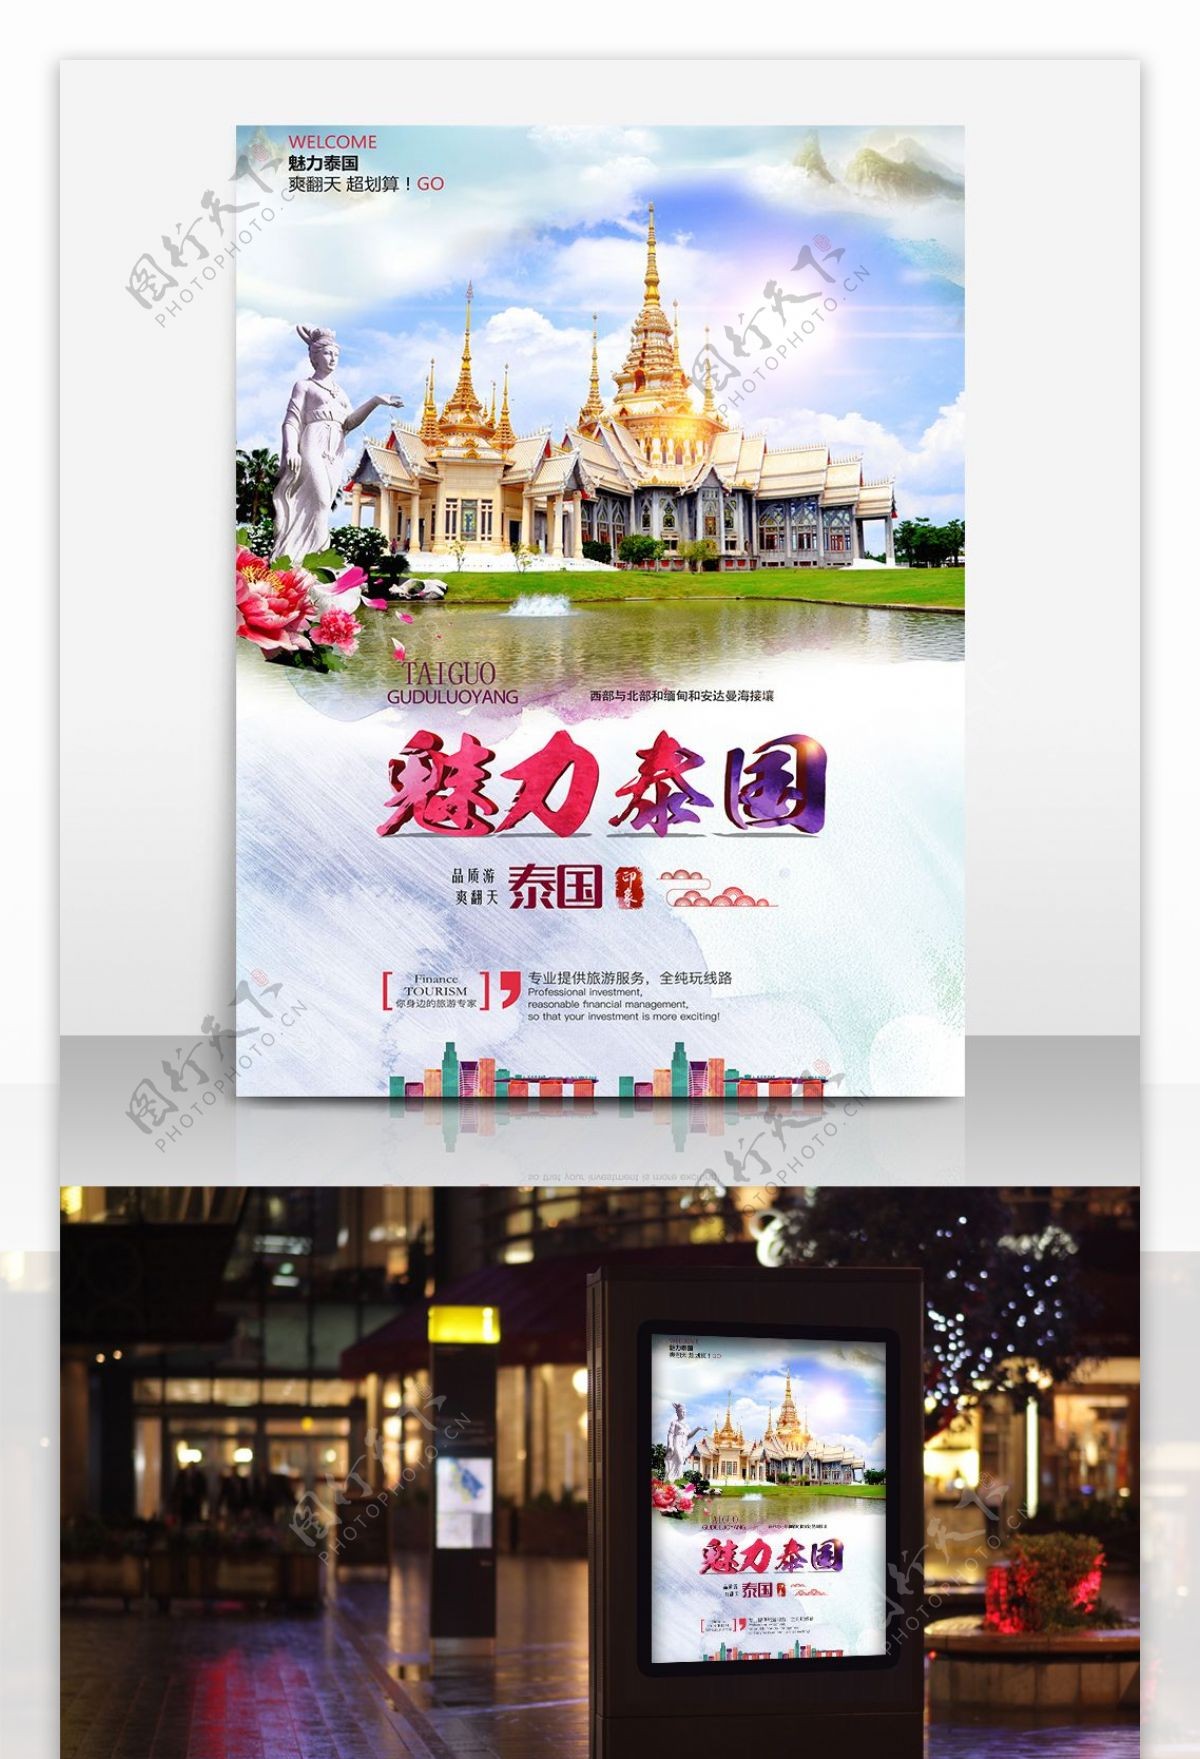 泰国旅游旅行社宣传海报